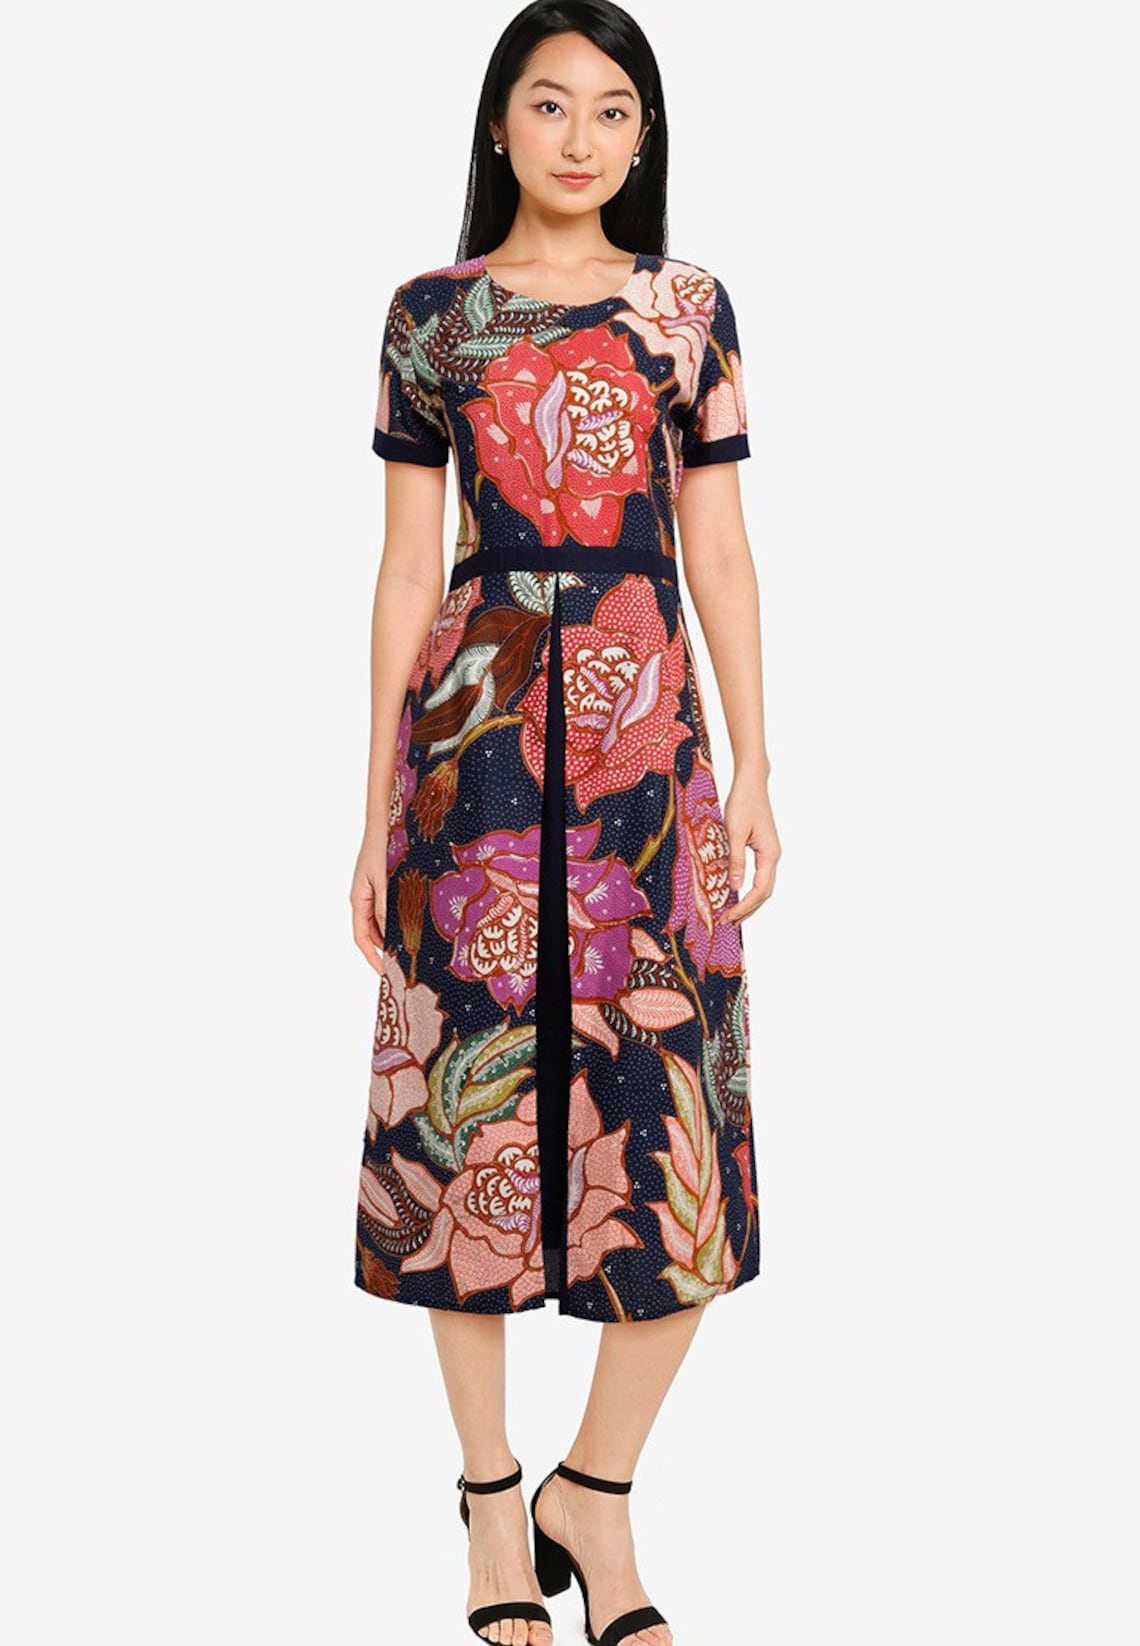 Batik Dress Batik Print Elegant Design Batik Premium Dress | Etsy